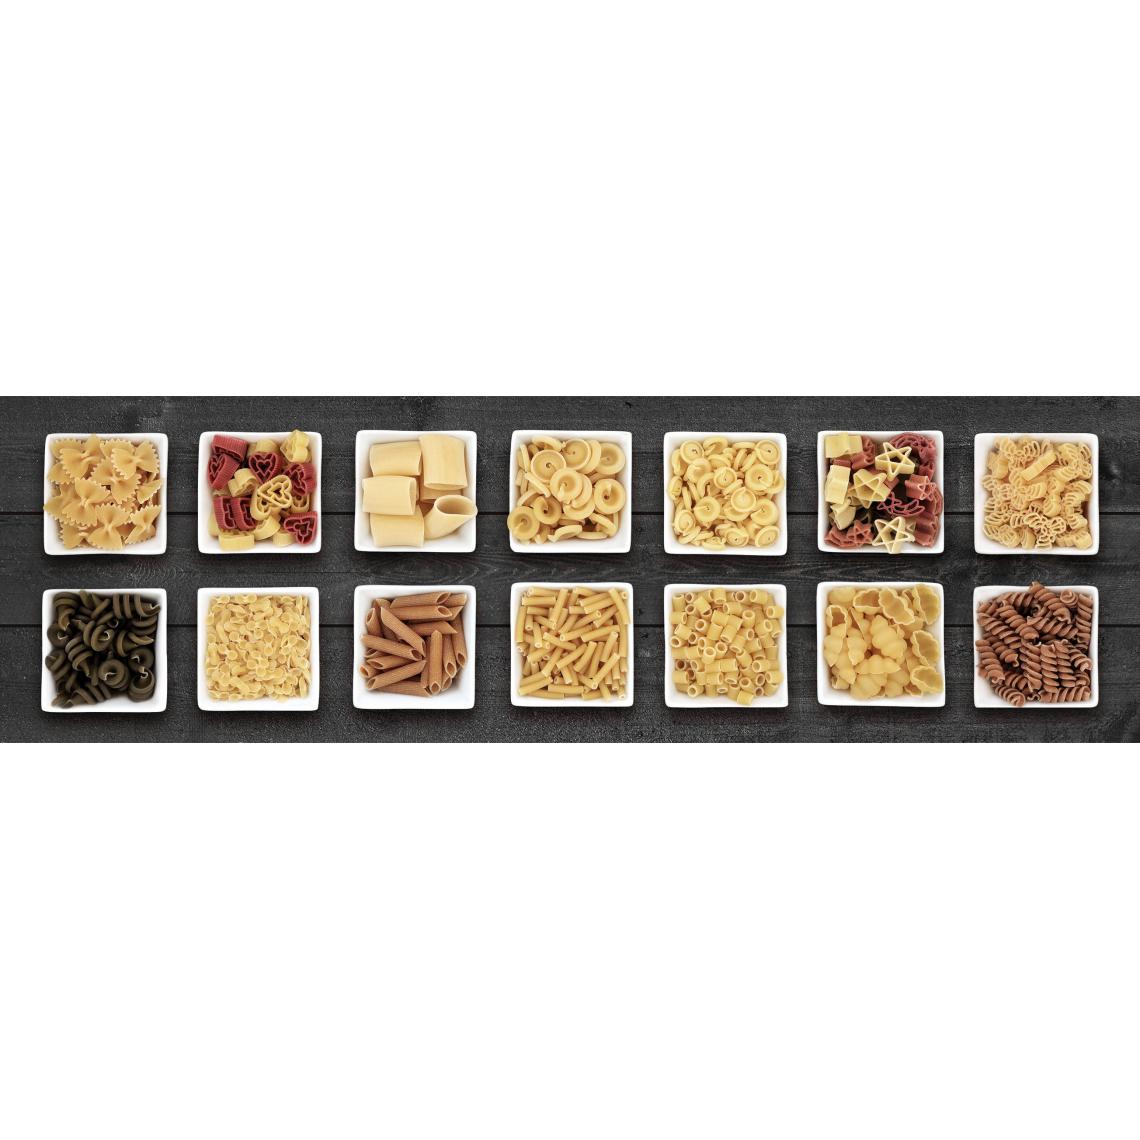 Alter - Chemin de cuisine, 100% Made in Italy, Tapis antitache avec impression numérique, Tapis antidérapant et lavable, Modèle Hailee, cm 220x52 - Tapis